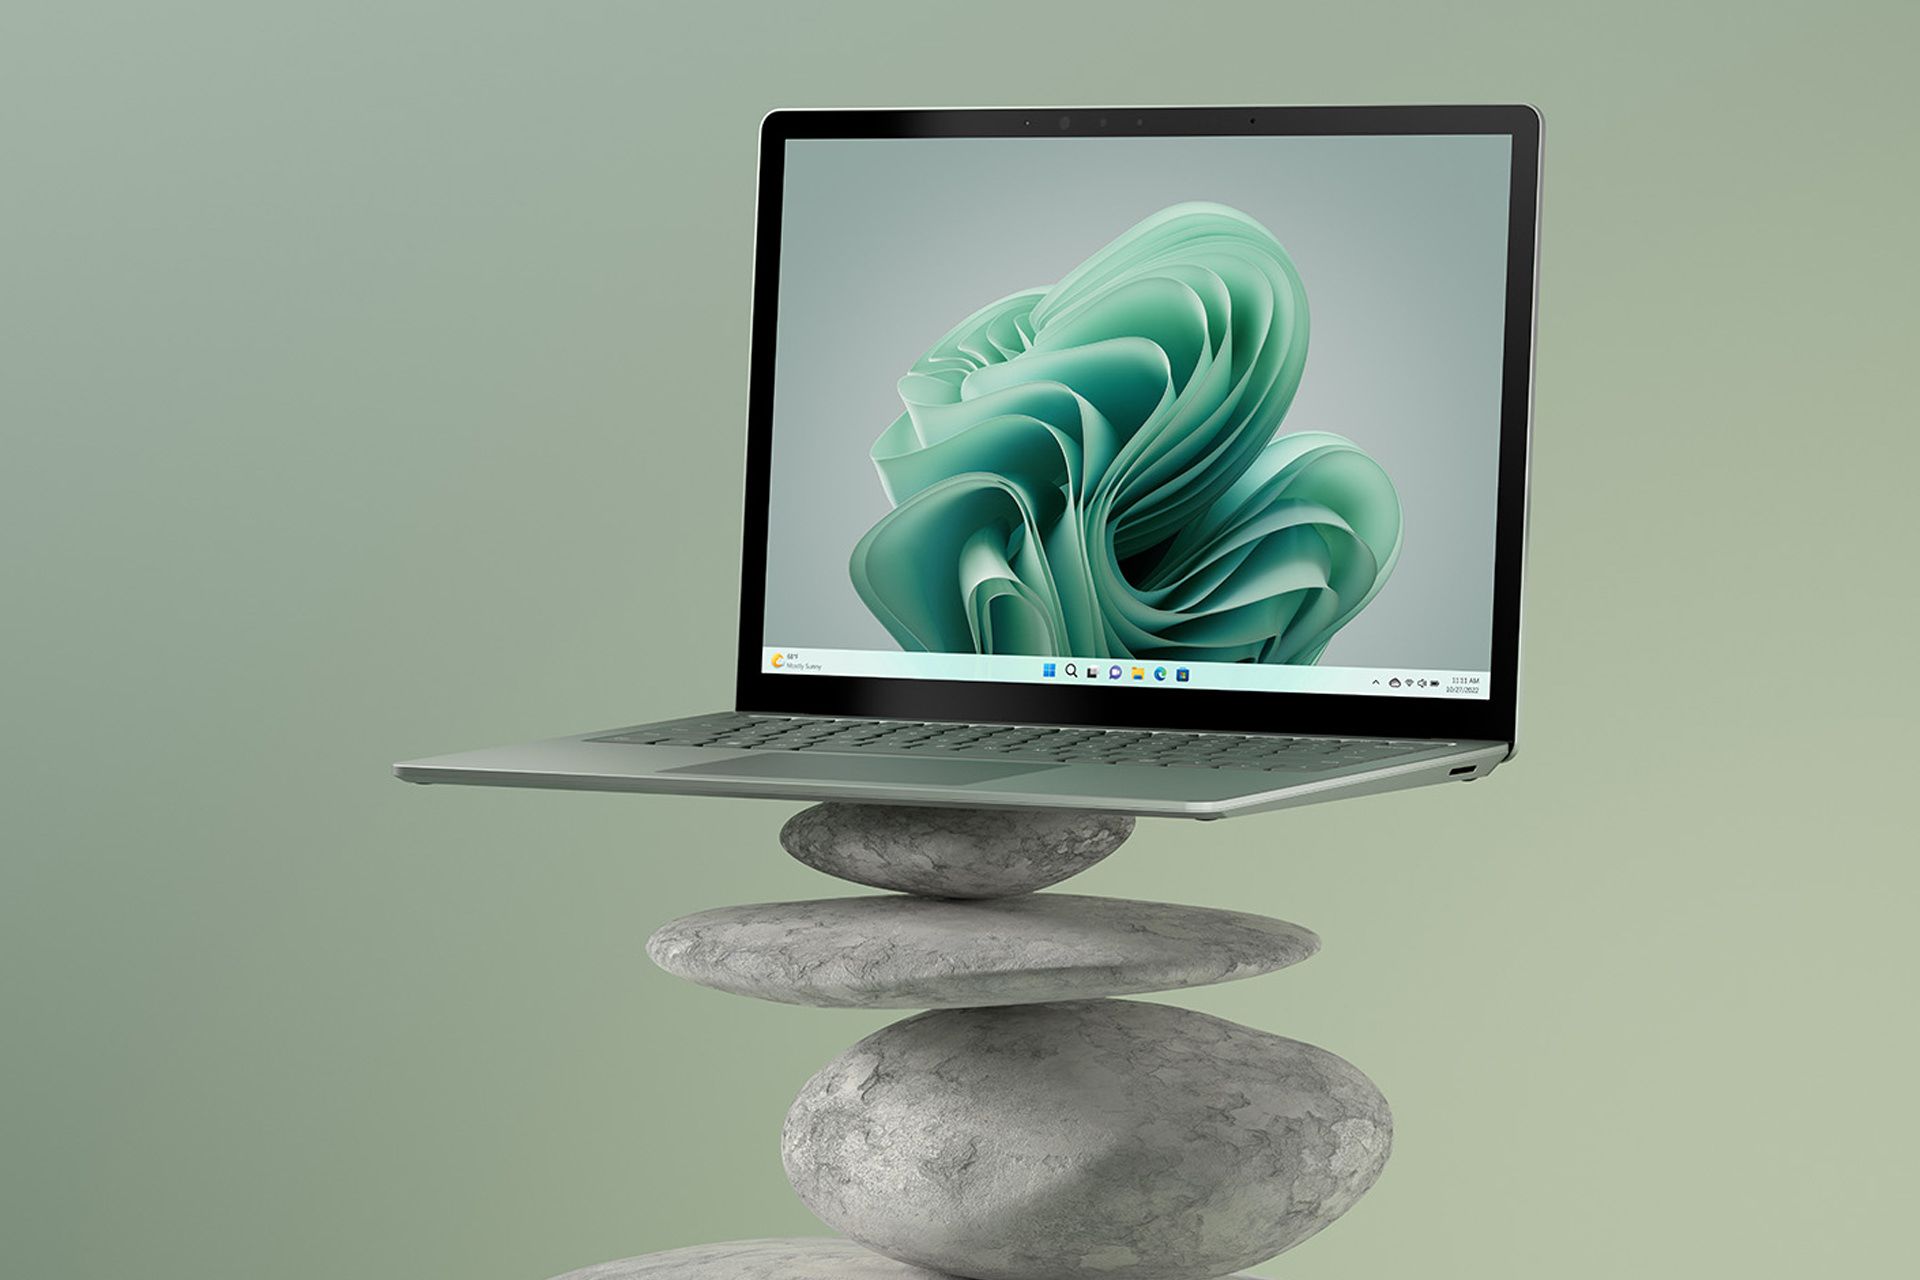 سرفیس لپ تاپ ۵ مایکروسافت Surface Laptop 5 سبز روی سنگ